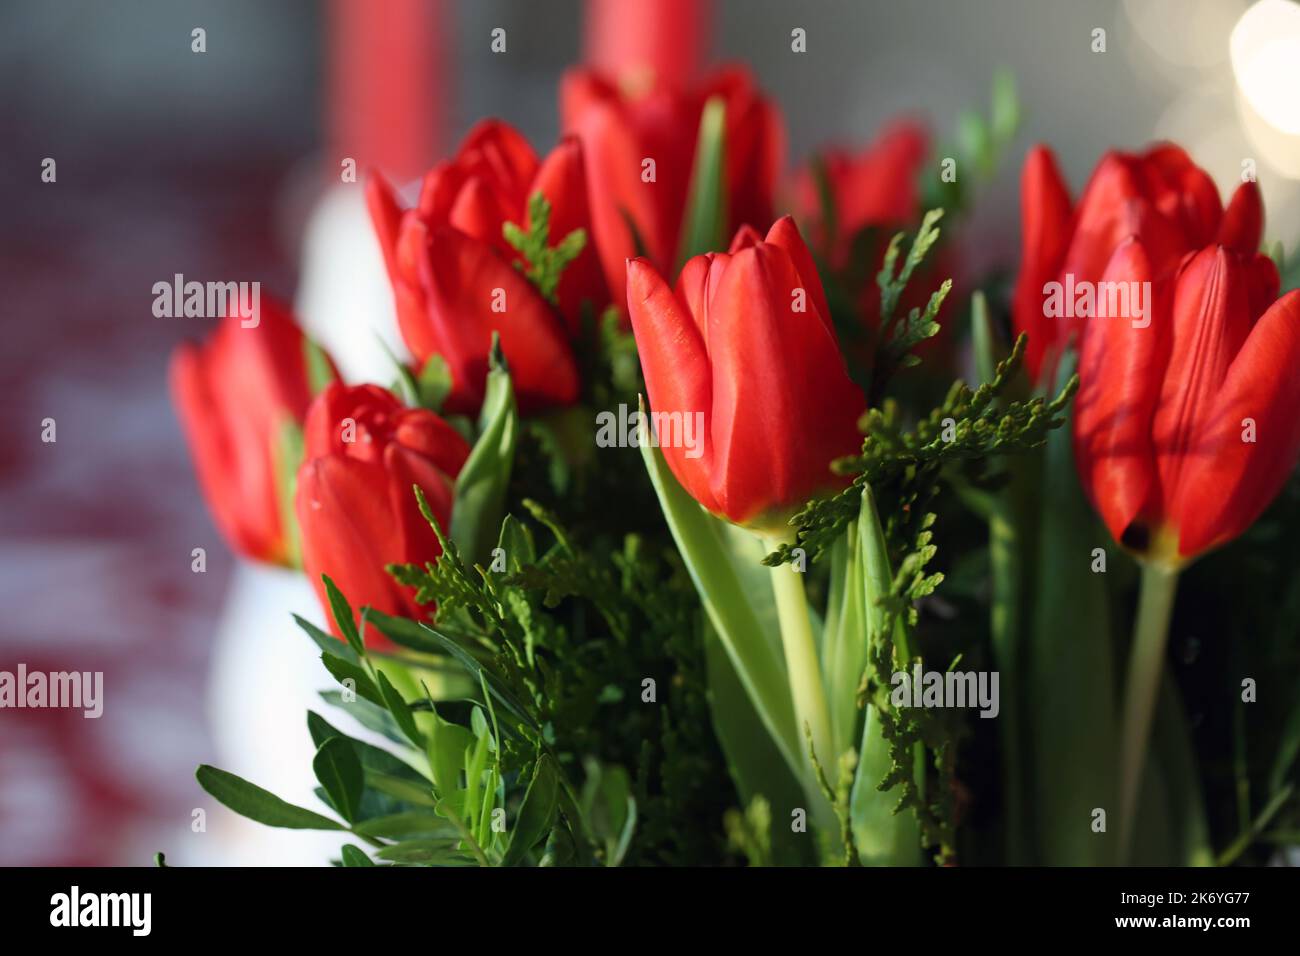 Plusieurs tulipes rouges en gros plan. Bouquet de tulipes à l'intérieur. Fleur qui peut symboliser l'amour, Noël, Pâques ou même les pays-Bas. Printemps coloré et lumineux Banque D'Images